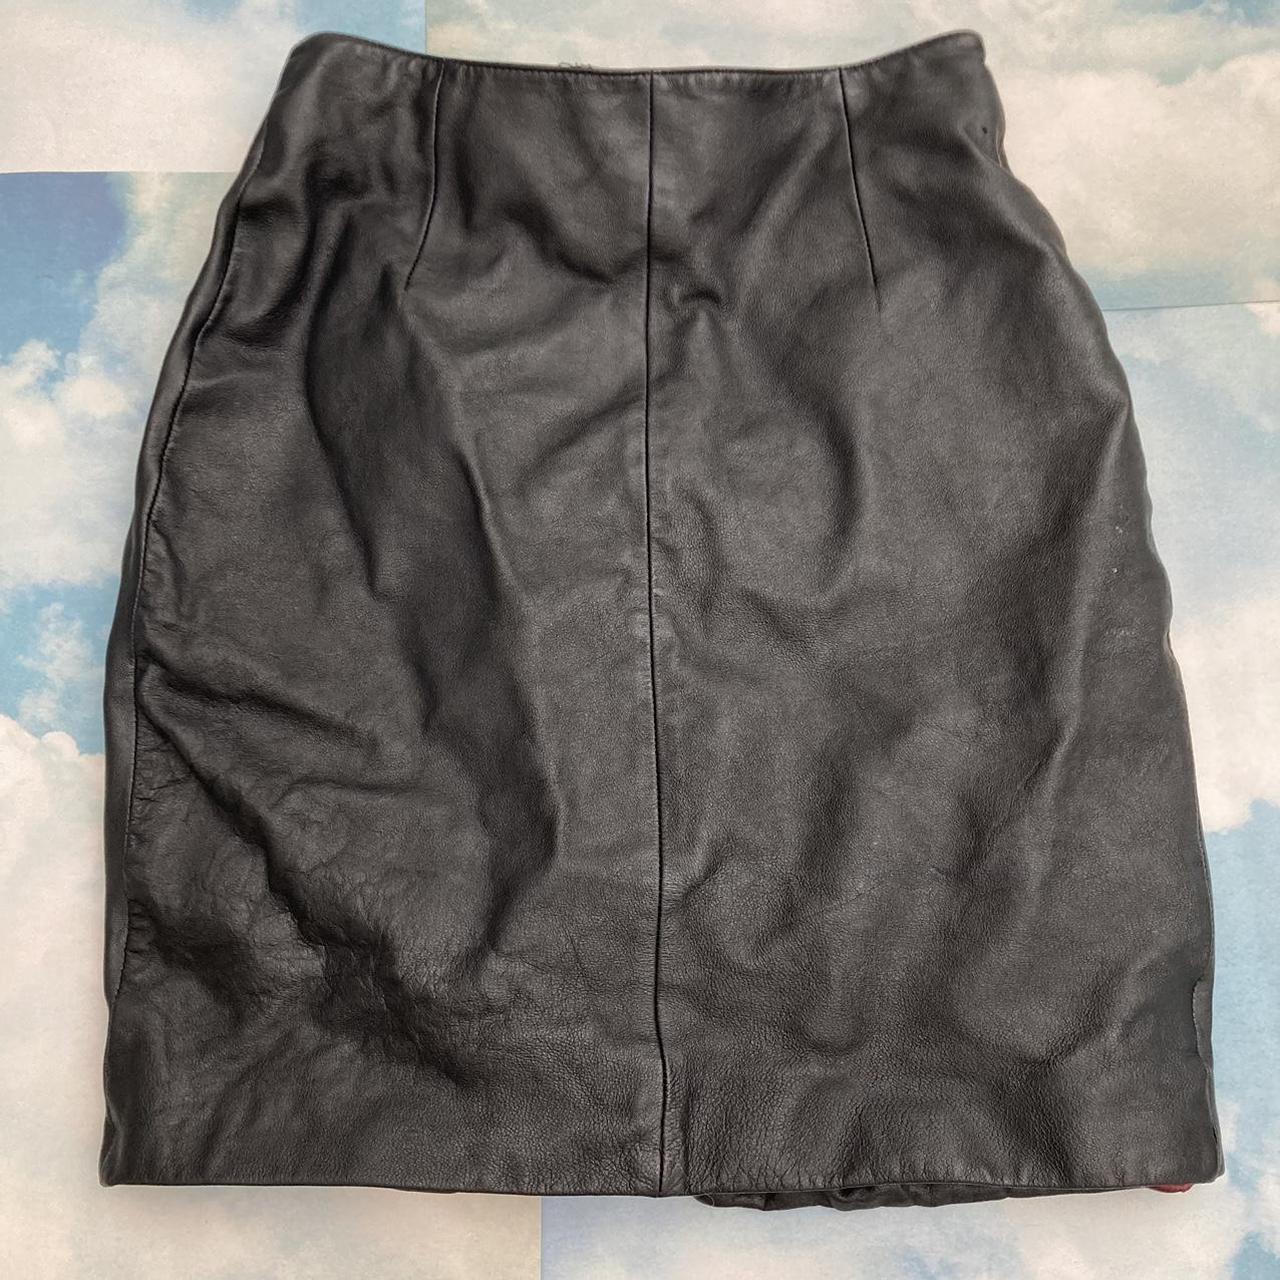 Vintage Black Leather Skirt 🌸Marked size 2,... - Depop